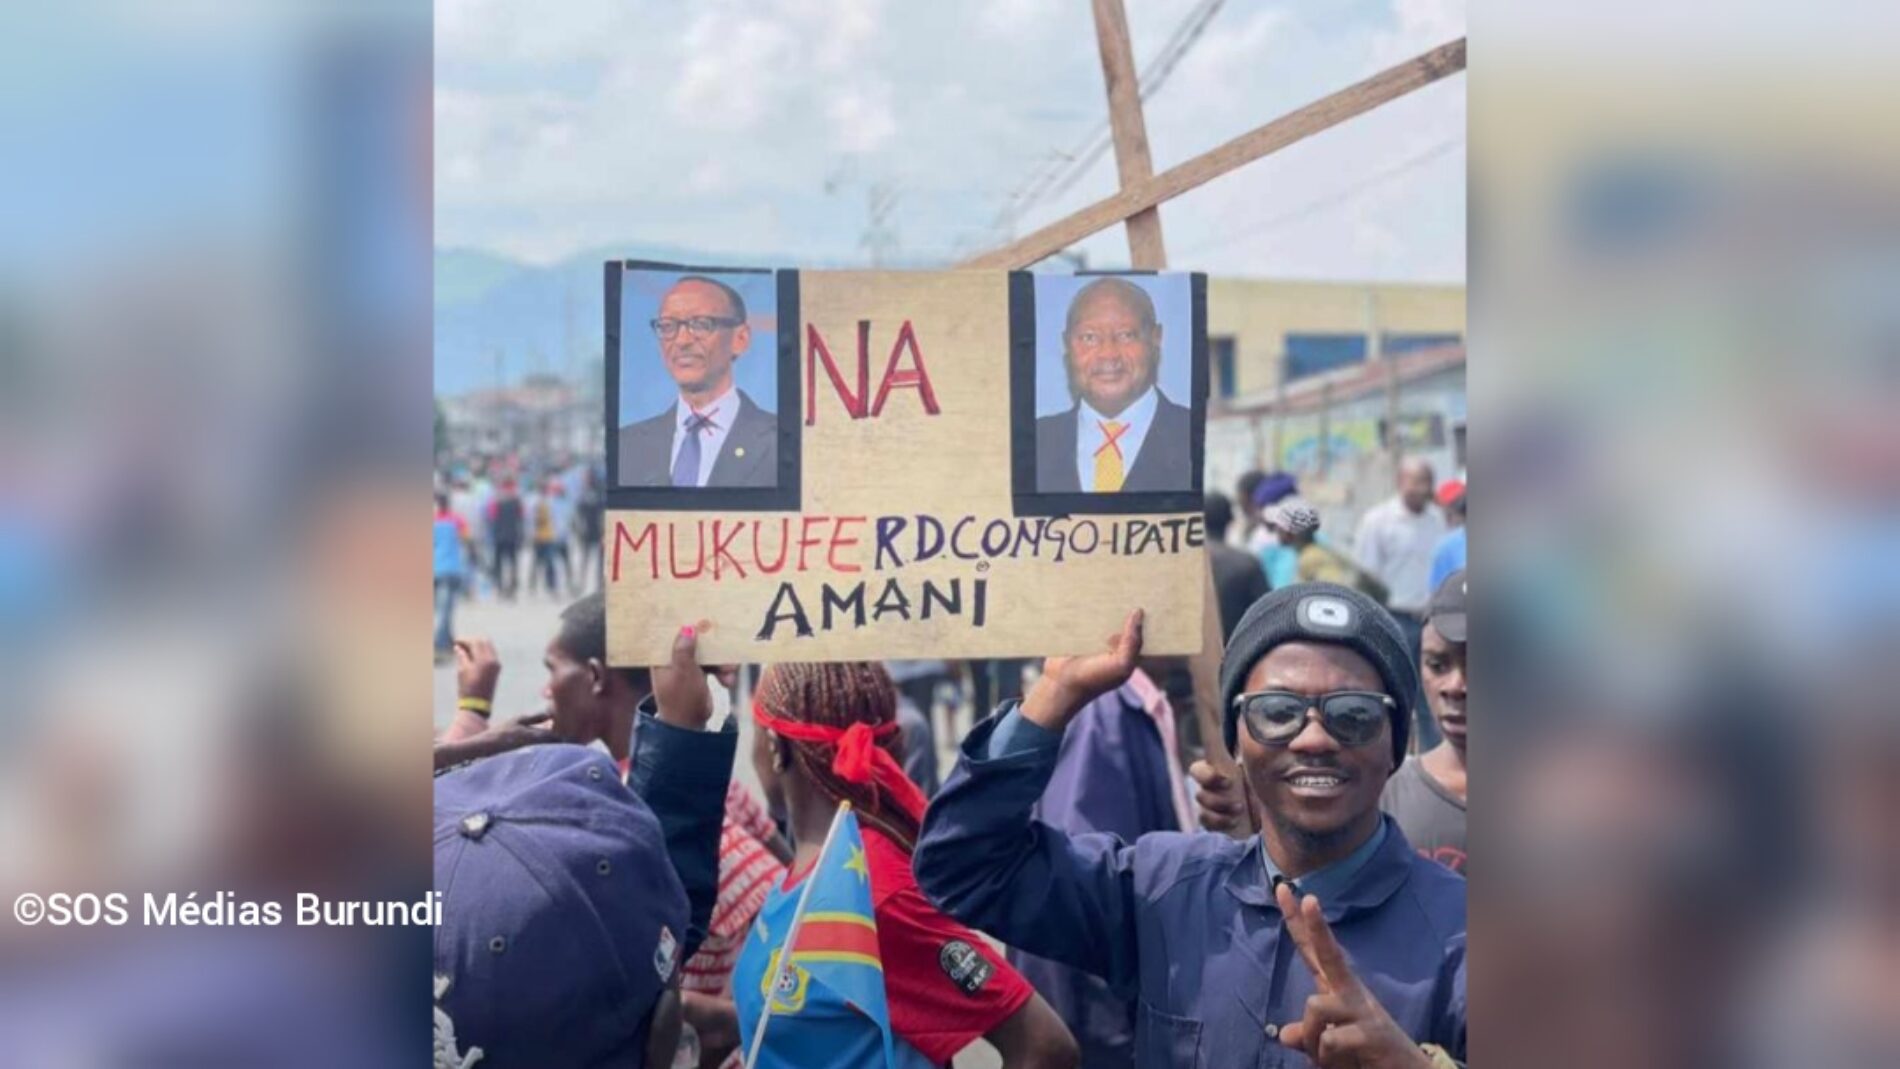 DRC-Rwanda: Uganda imetuhumiwa kwa kiwango sawa na Rwanda